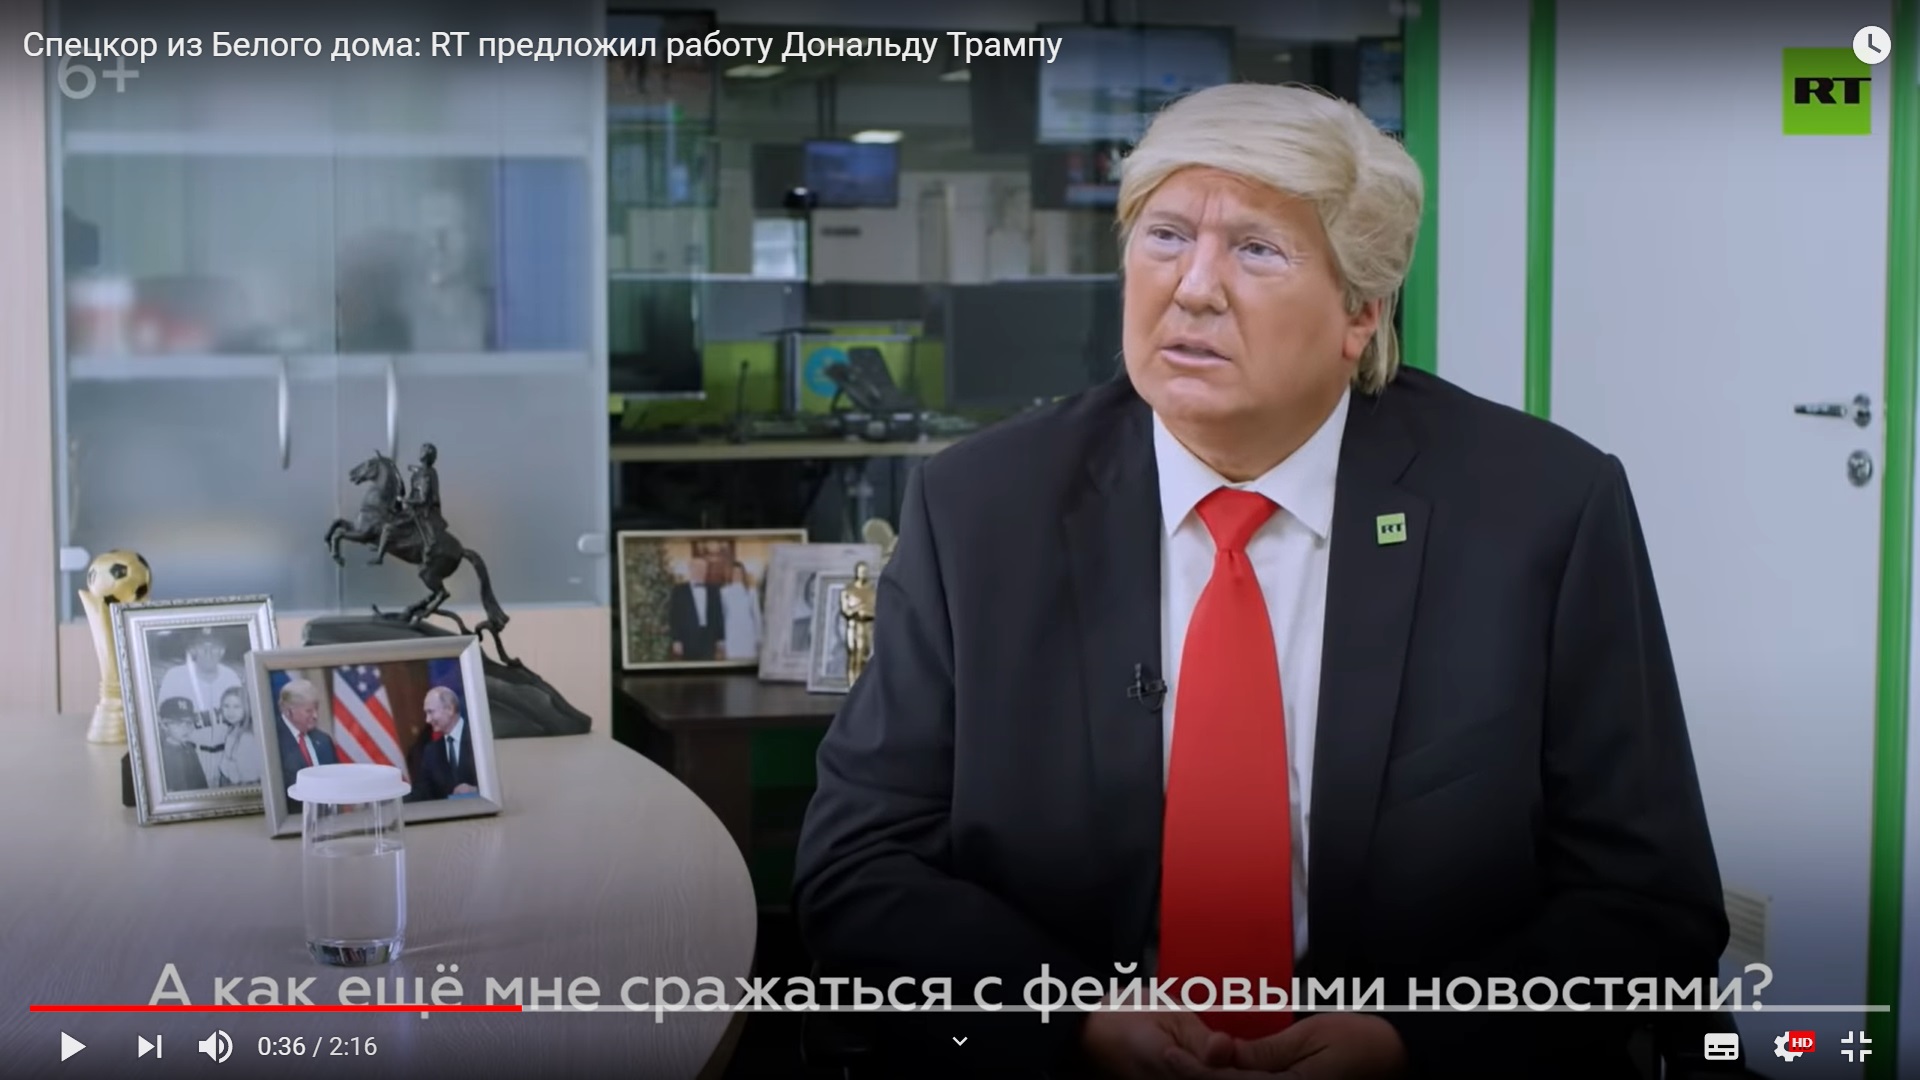 Цитата из видео «Спецкор из Белого дома: RT предложил работу Дональду Трампу» канала «RT на русском»